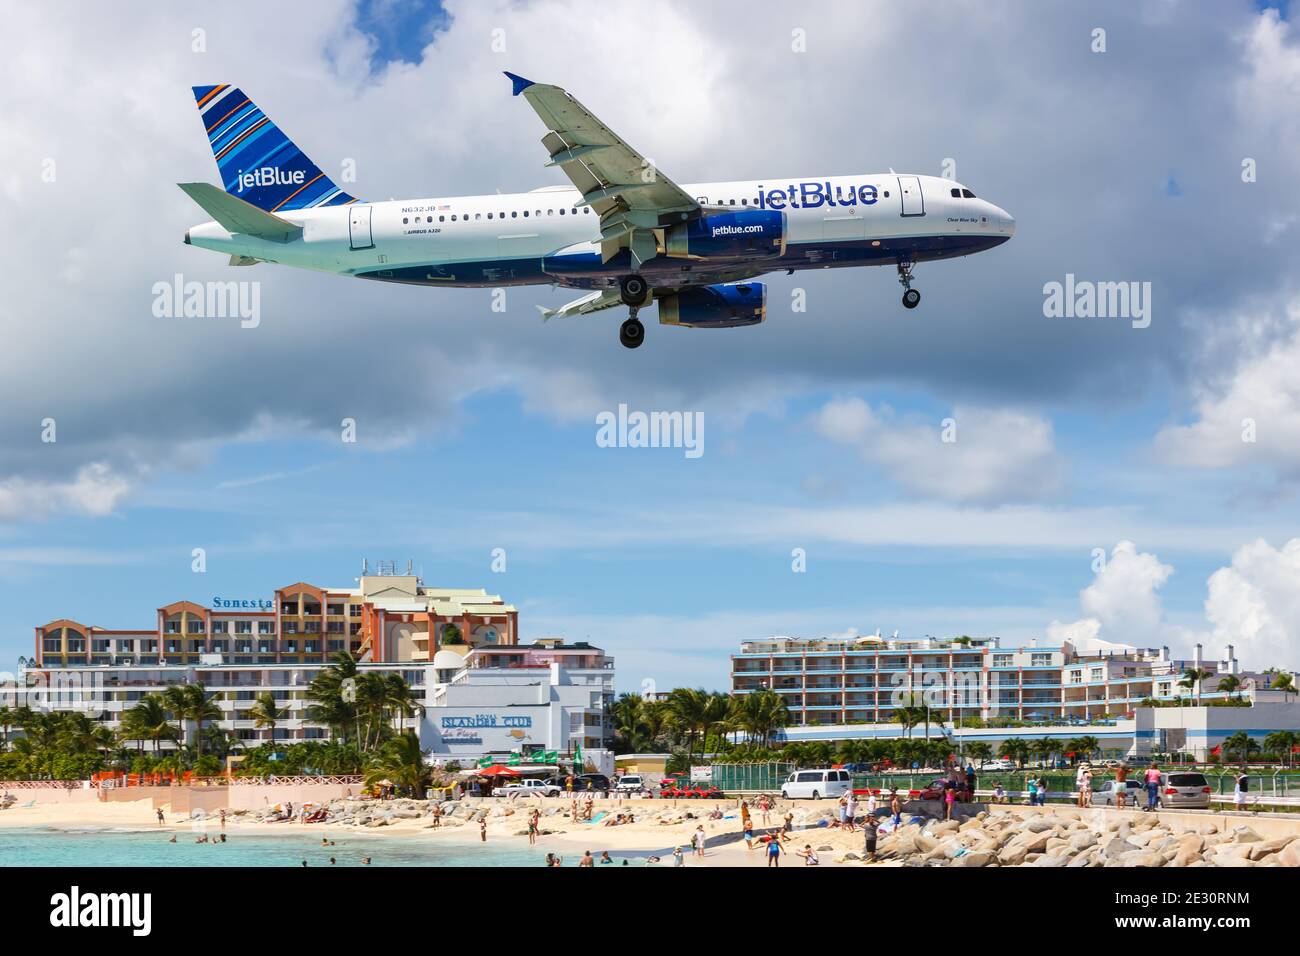 Sint Maarten, Netherlands Antilles - September 18, 2016: JetBlue Airbus A320 airplane at Sint Maarten Airport (SXM) in the Caribbean. Stock Photo